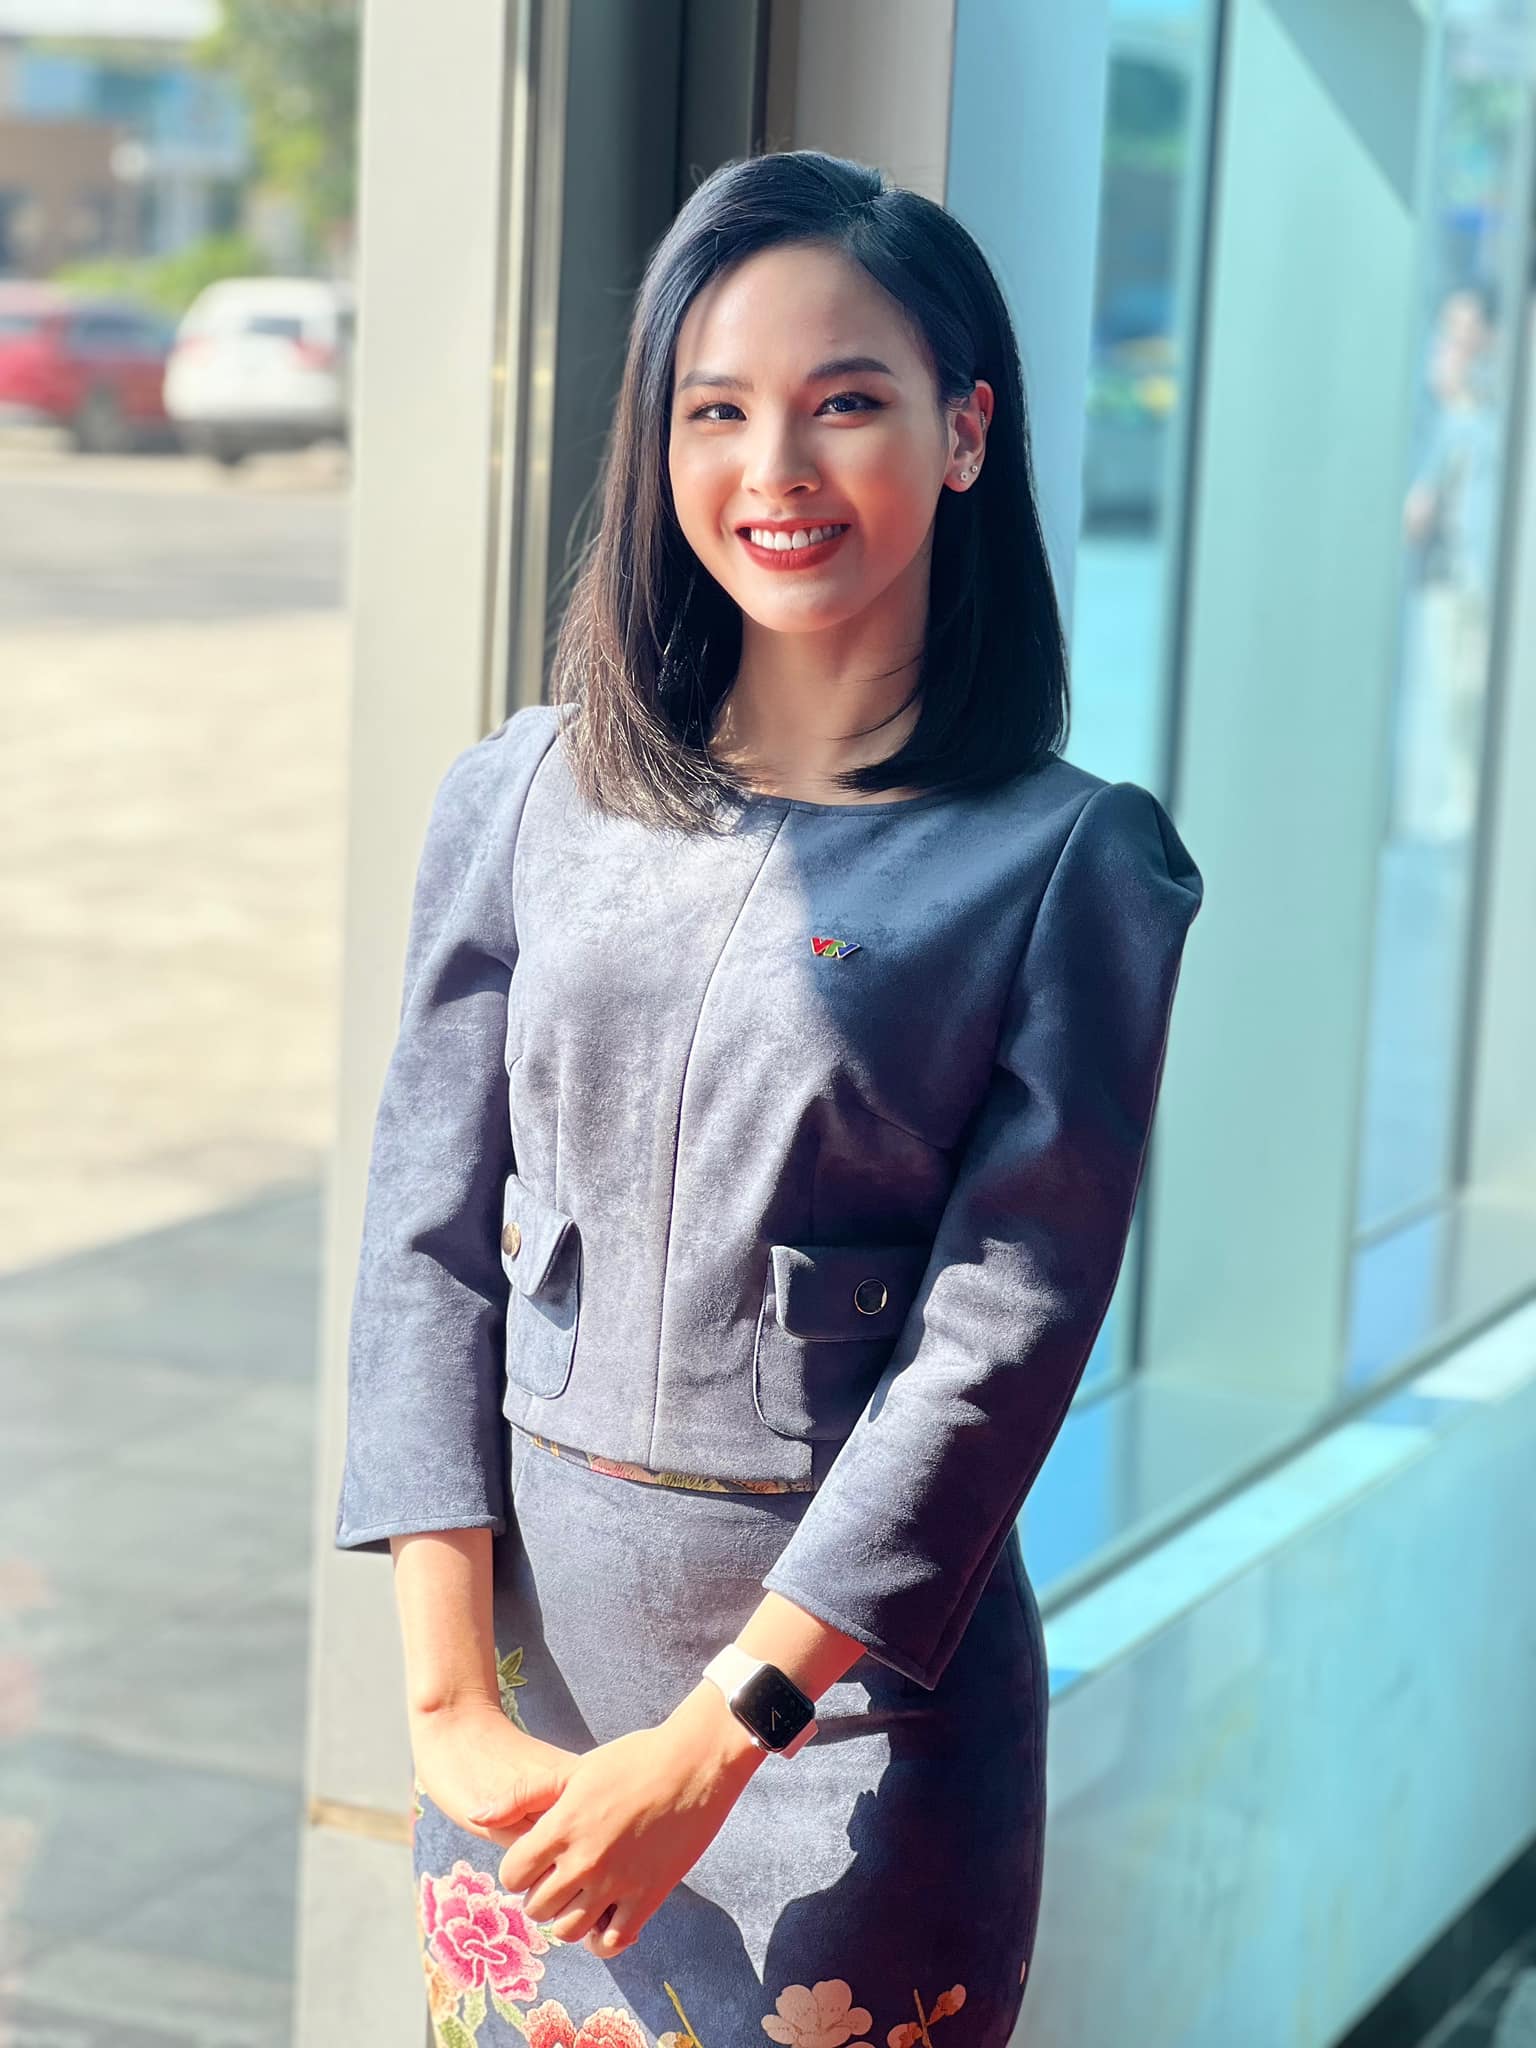 Quỳnh Nga - BTV trẻ nhất thời sự VTV: Top 10 Miss World Vietnam, IELTS 7.5 - Ảnh 1